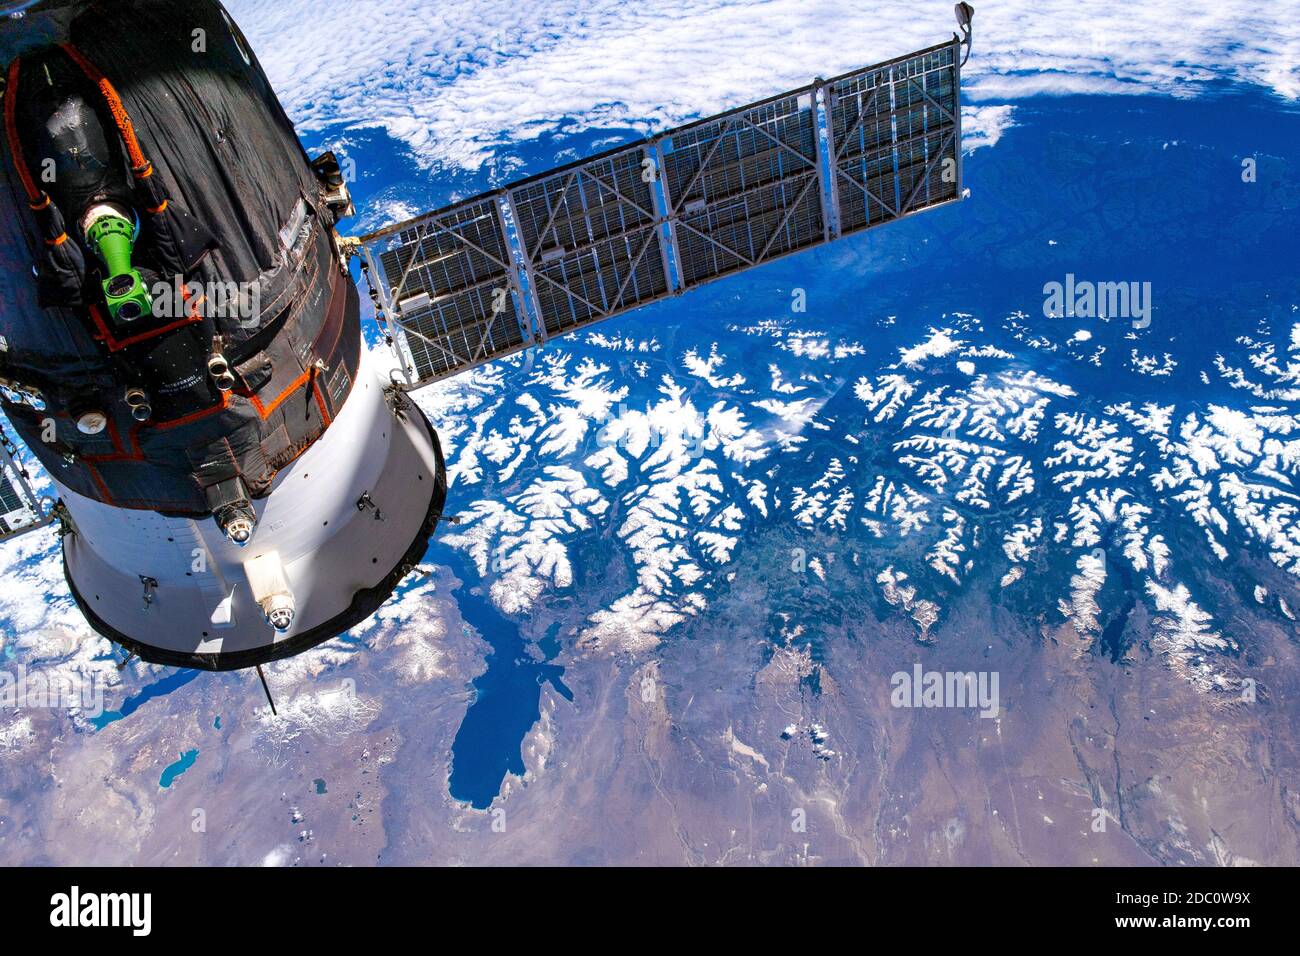 Dettagli del pianeta Terra dallo spazio. L'ISS sorvola gli elementi argentini di questa immagine fornita dalla NASA (si prega di seguire le loro linee guida per l'uso) Foto Stock